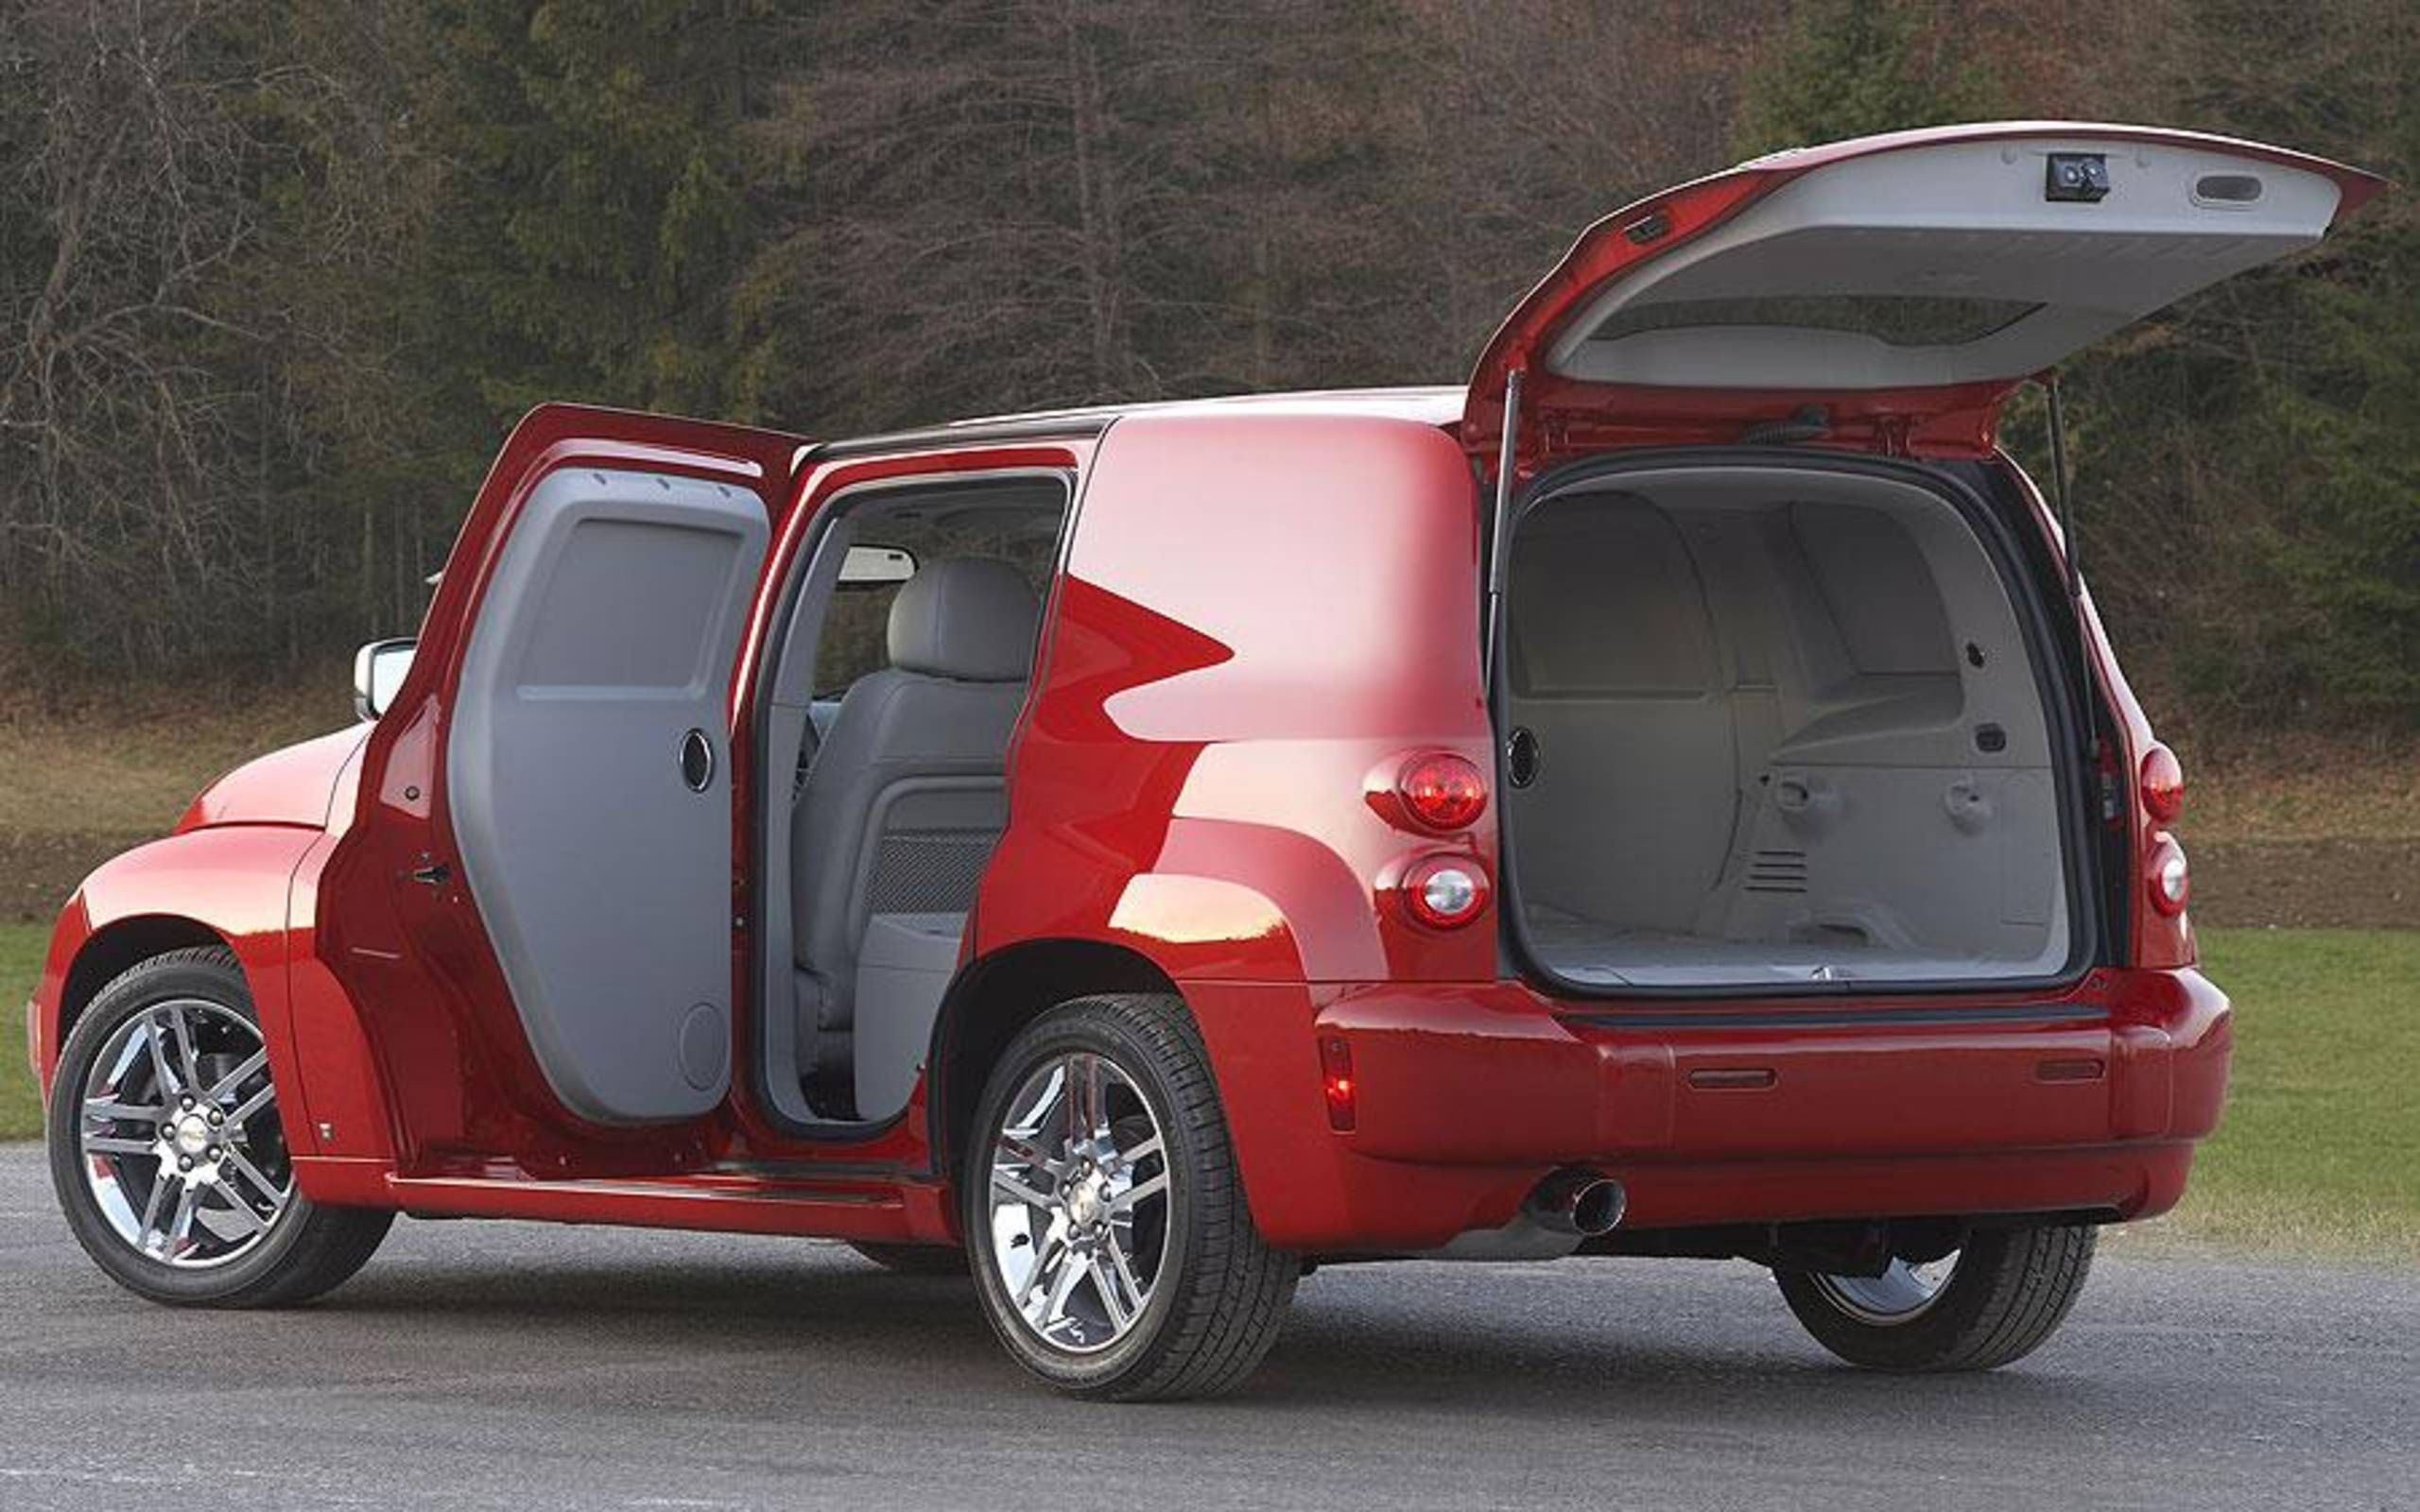 Chevrolet HHR Panel LT is versatile: A short stint review